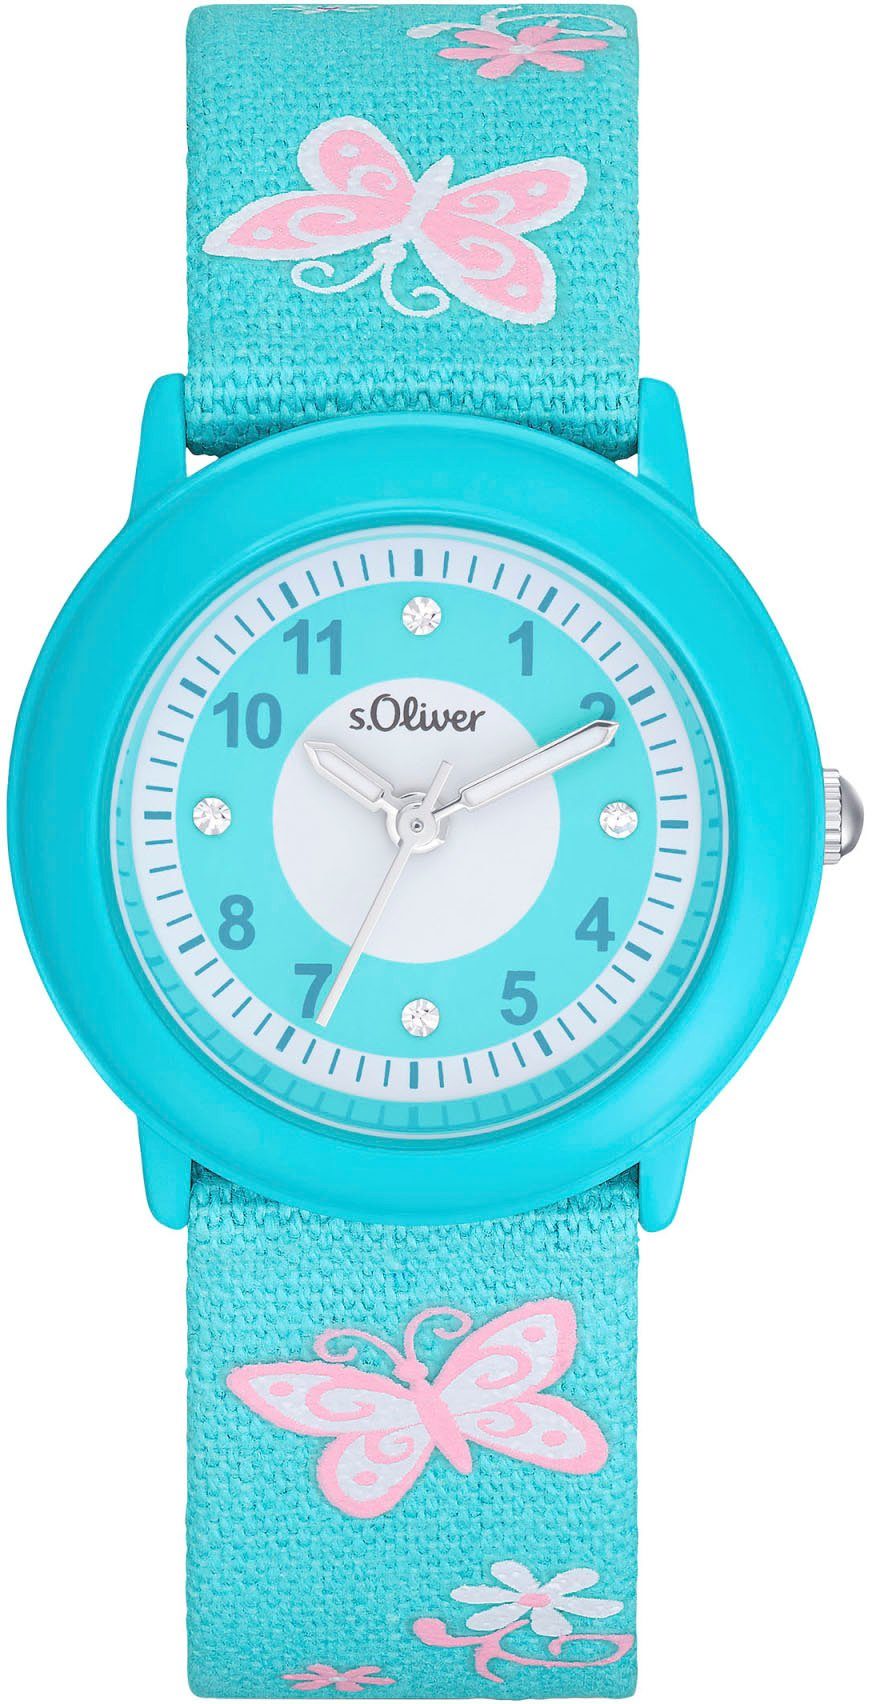 s.Oliver Quarzuhr 2036749, Armbanduhr, Kinderuhr, ideal auch als Geschenk